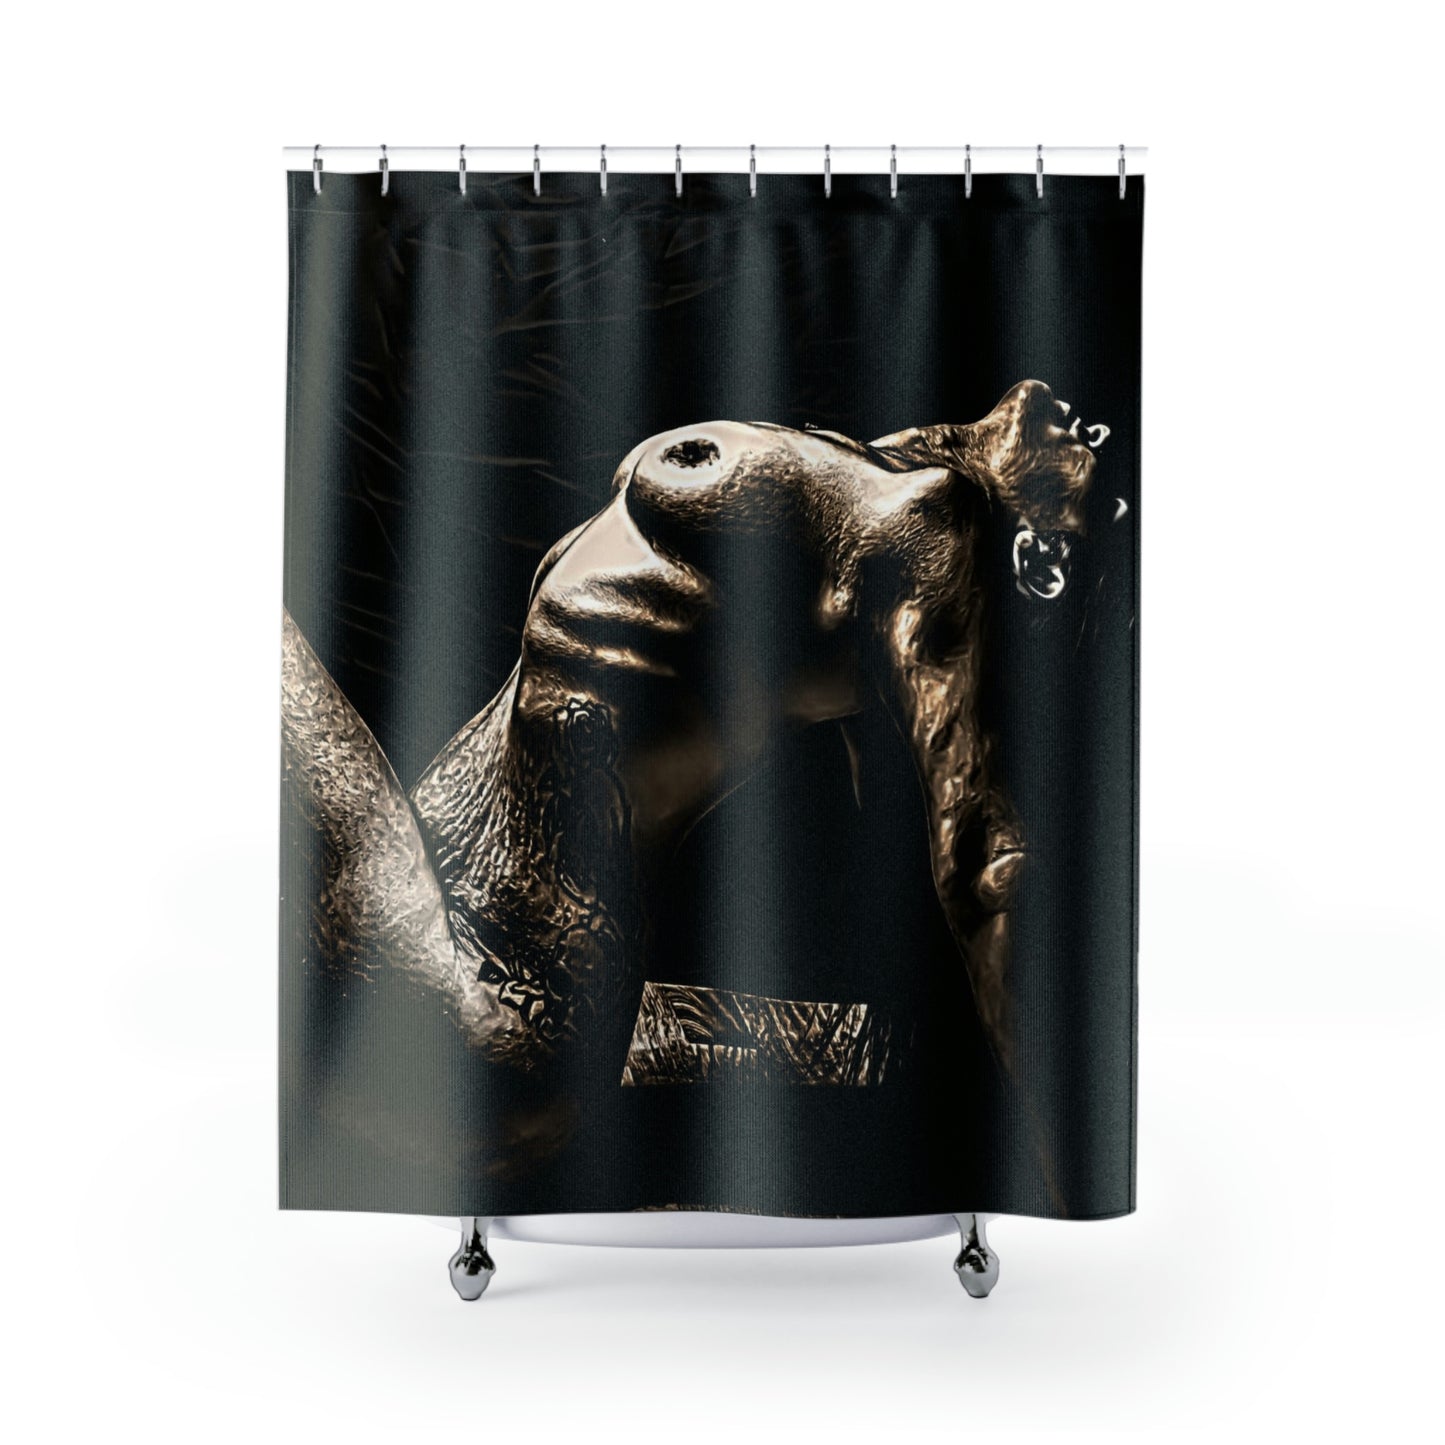 Bronzed Shower Curtains